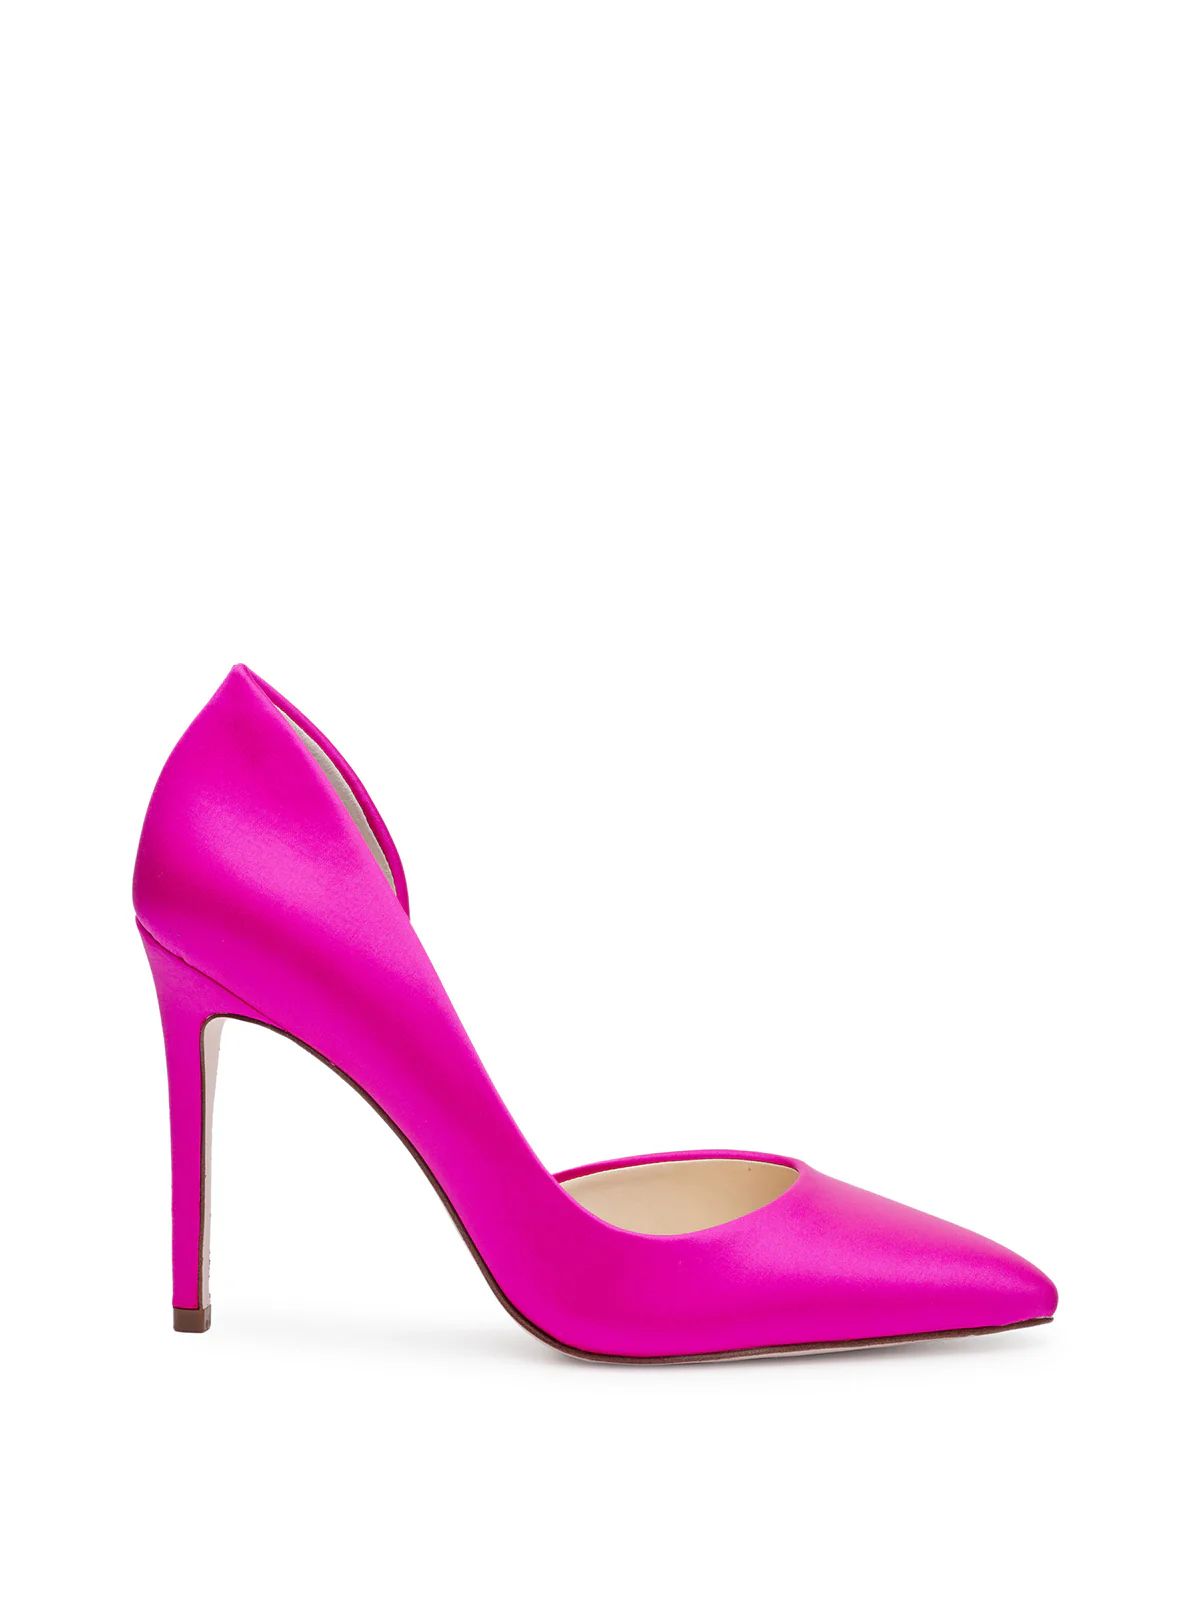 Prizma D'Orsay Pump in Brightest Pink | Jessica Simpson E Commerce